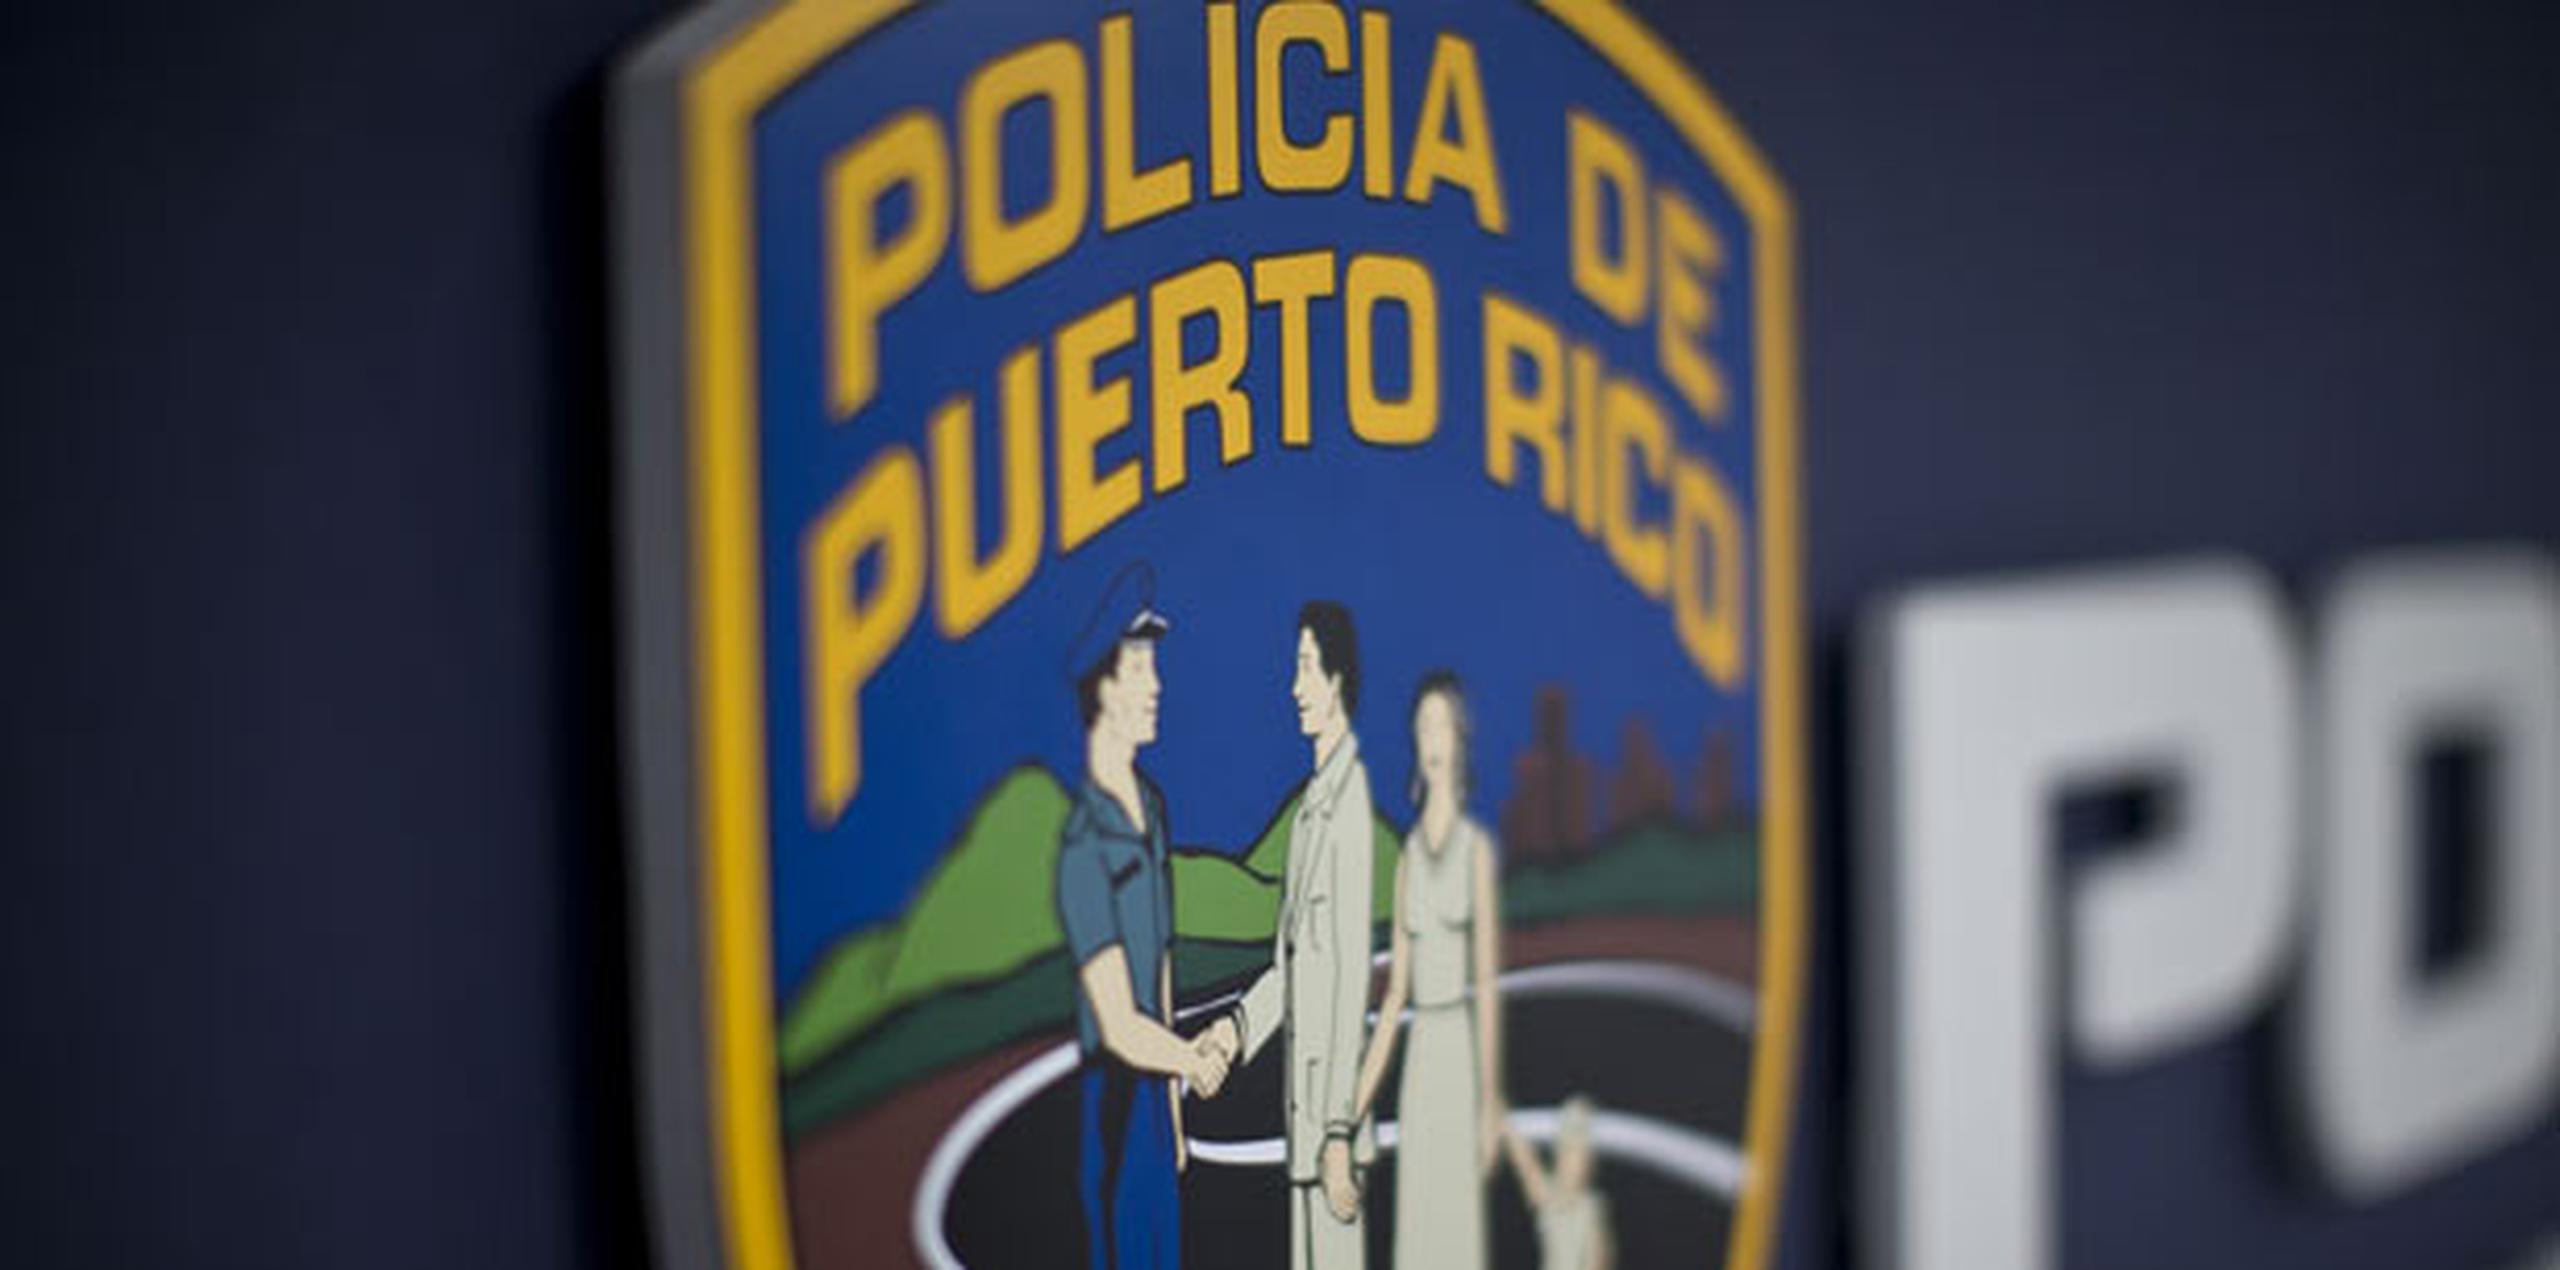 El policía investigado por mostrar supuestamente sus genitales en fotos a través de Internet será entrevistado mañana, anticipó el superintendente José Caldero. (Archivo)